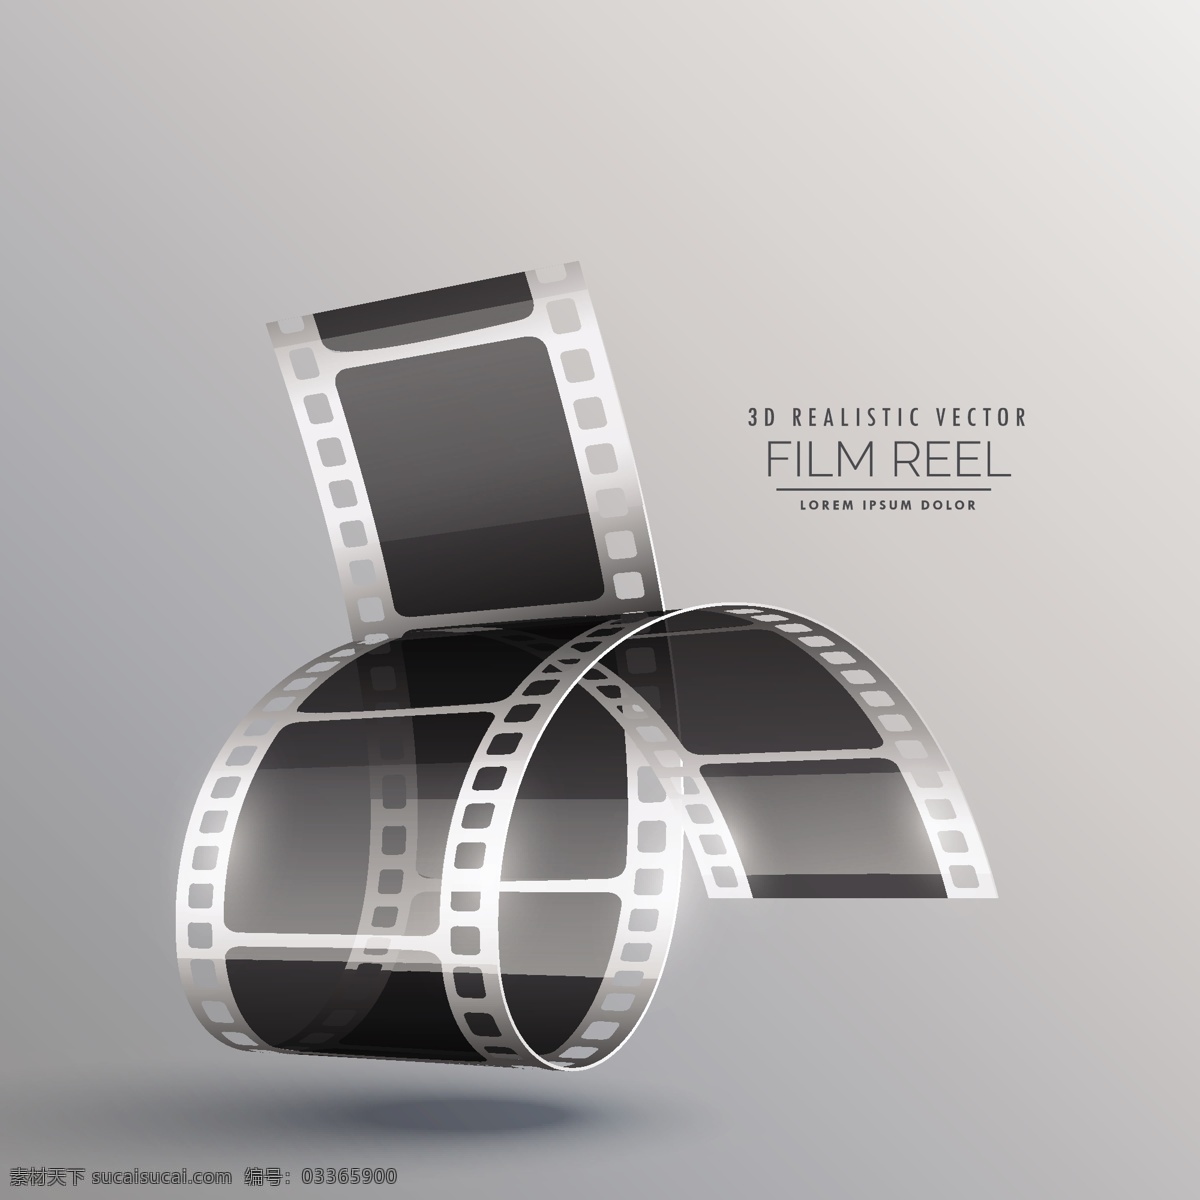 灰色 背景 下 三维 胶片 滚动 相机 黑色 3d电影 电影 数字媒体 录音工作室 滚 画面 娱乐 轨道 带 幻灯片 卷轴 现实